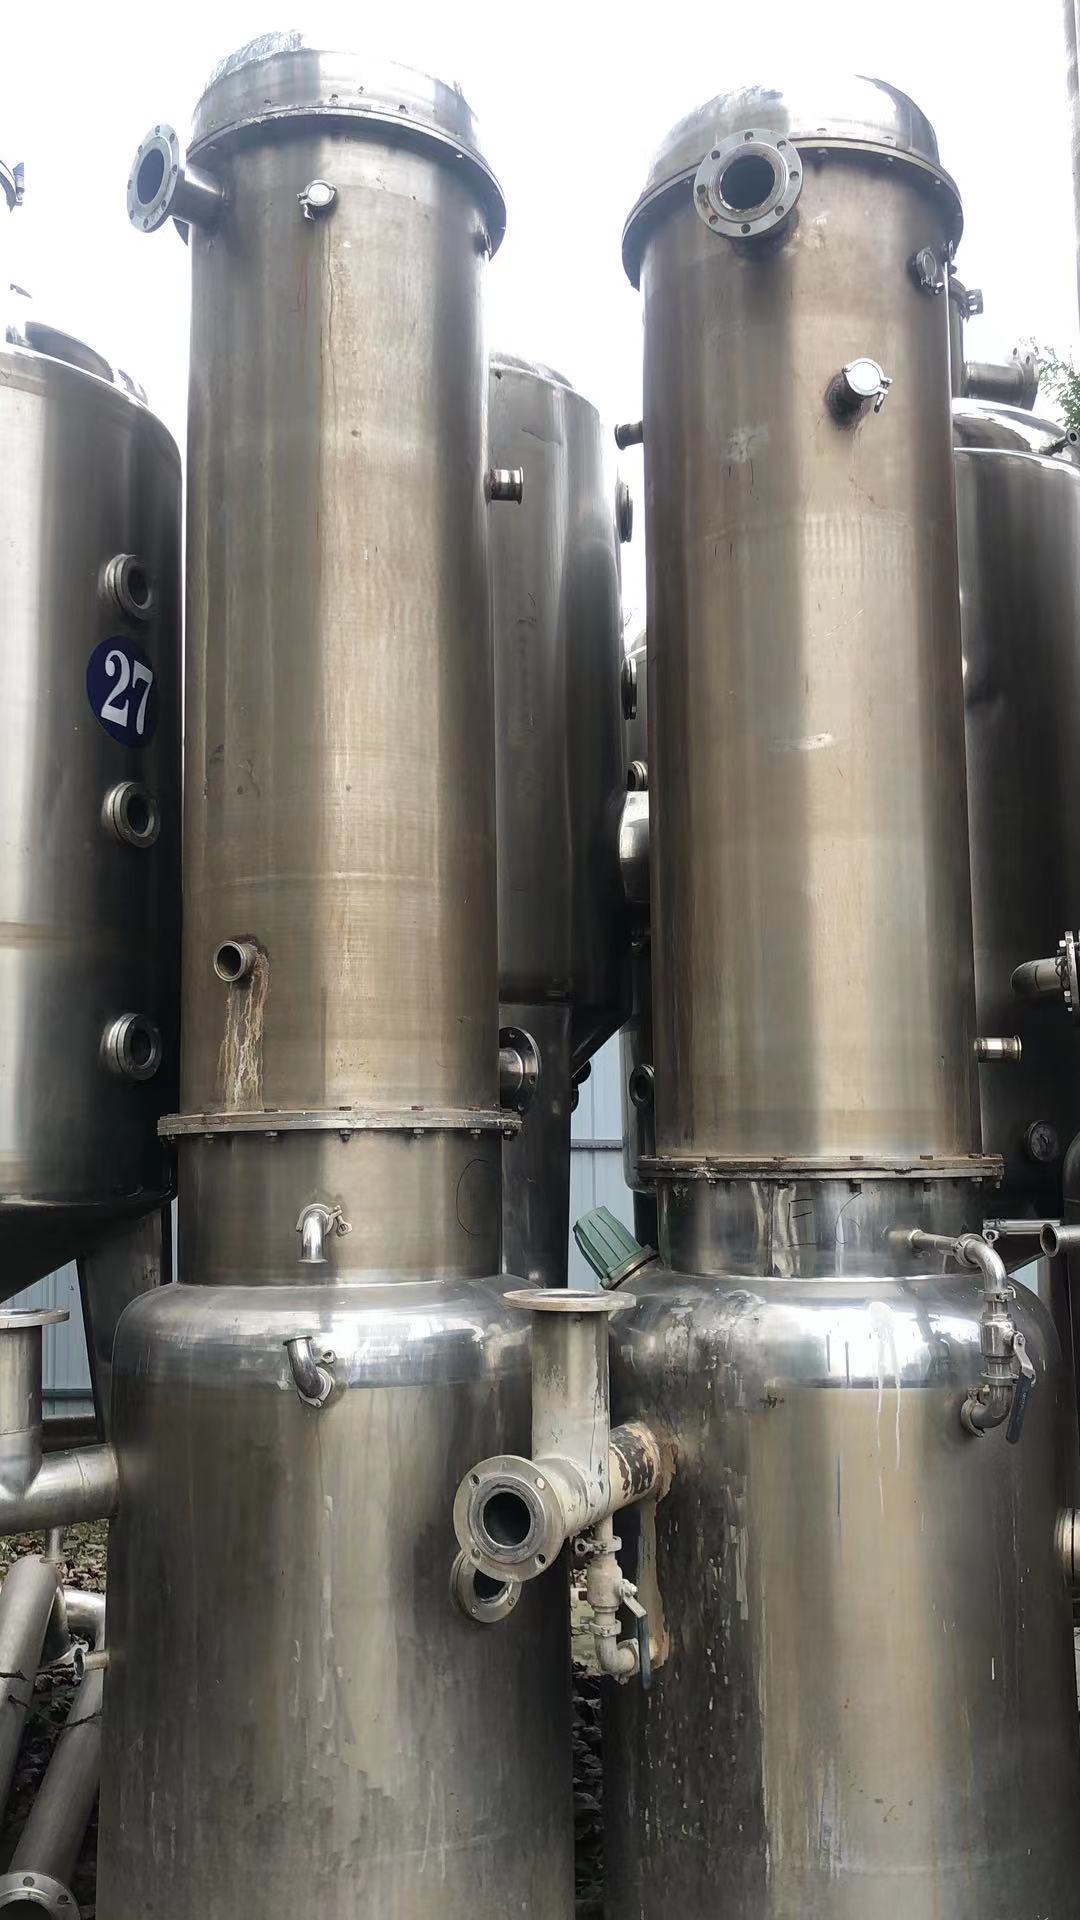 薄膜蒸发器 二手薄膜蒸发器  二手浓缩蒸发器  12吨  厂家直销